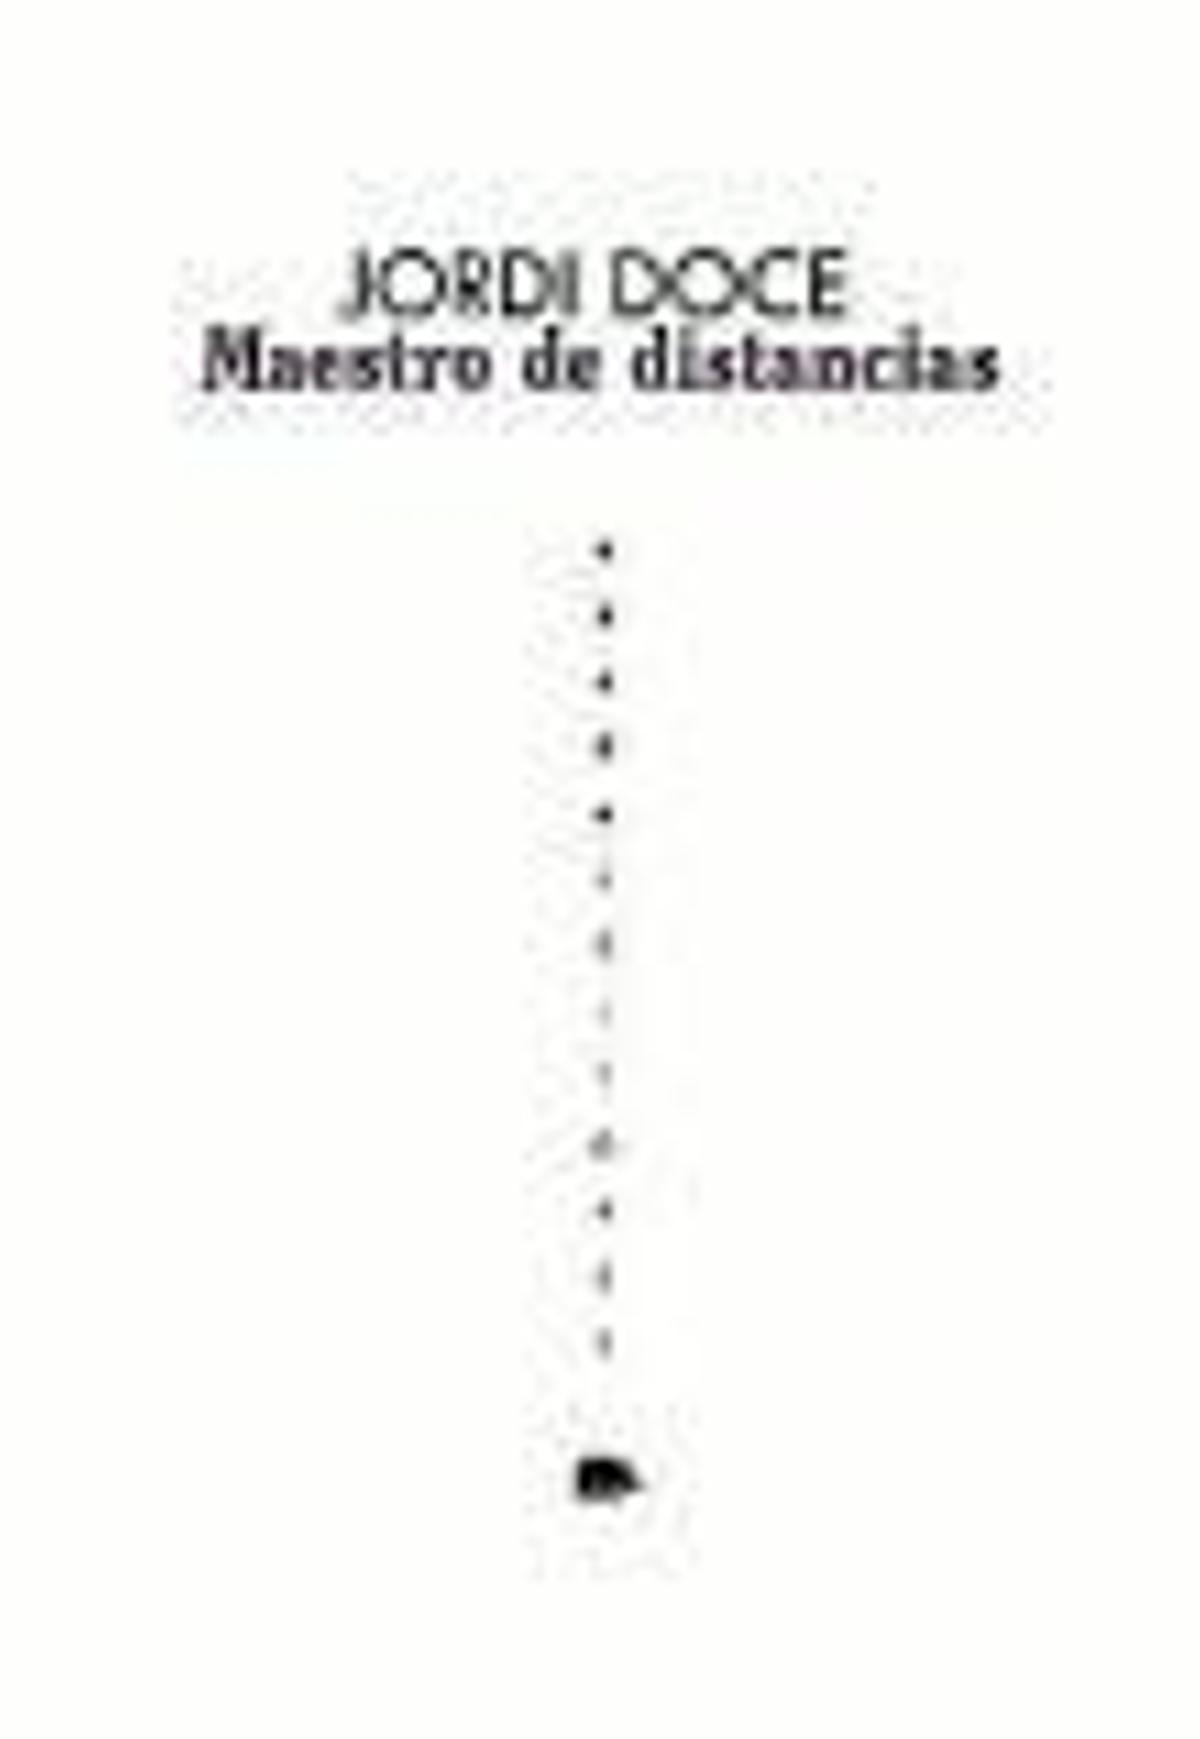 JORDI DOCE. Maestro de distancias. Abada, 120 páginas, 15 €.